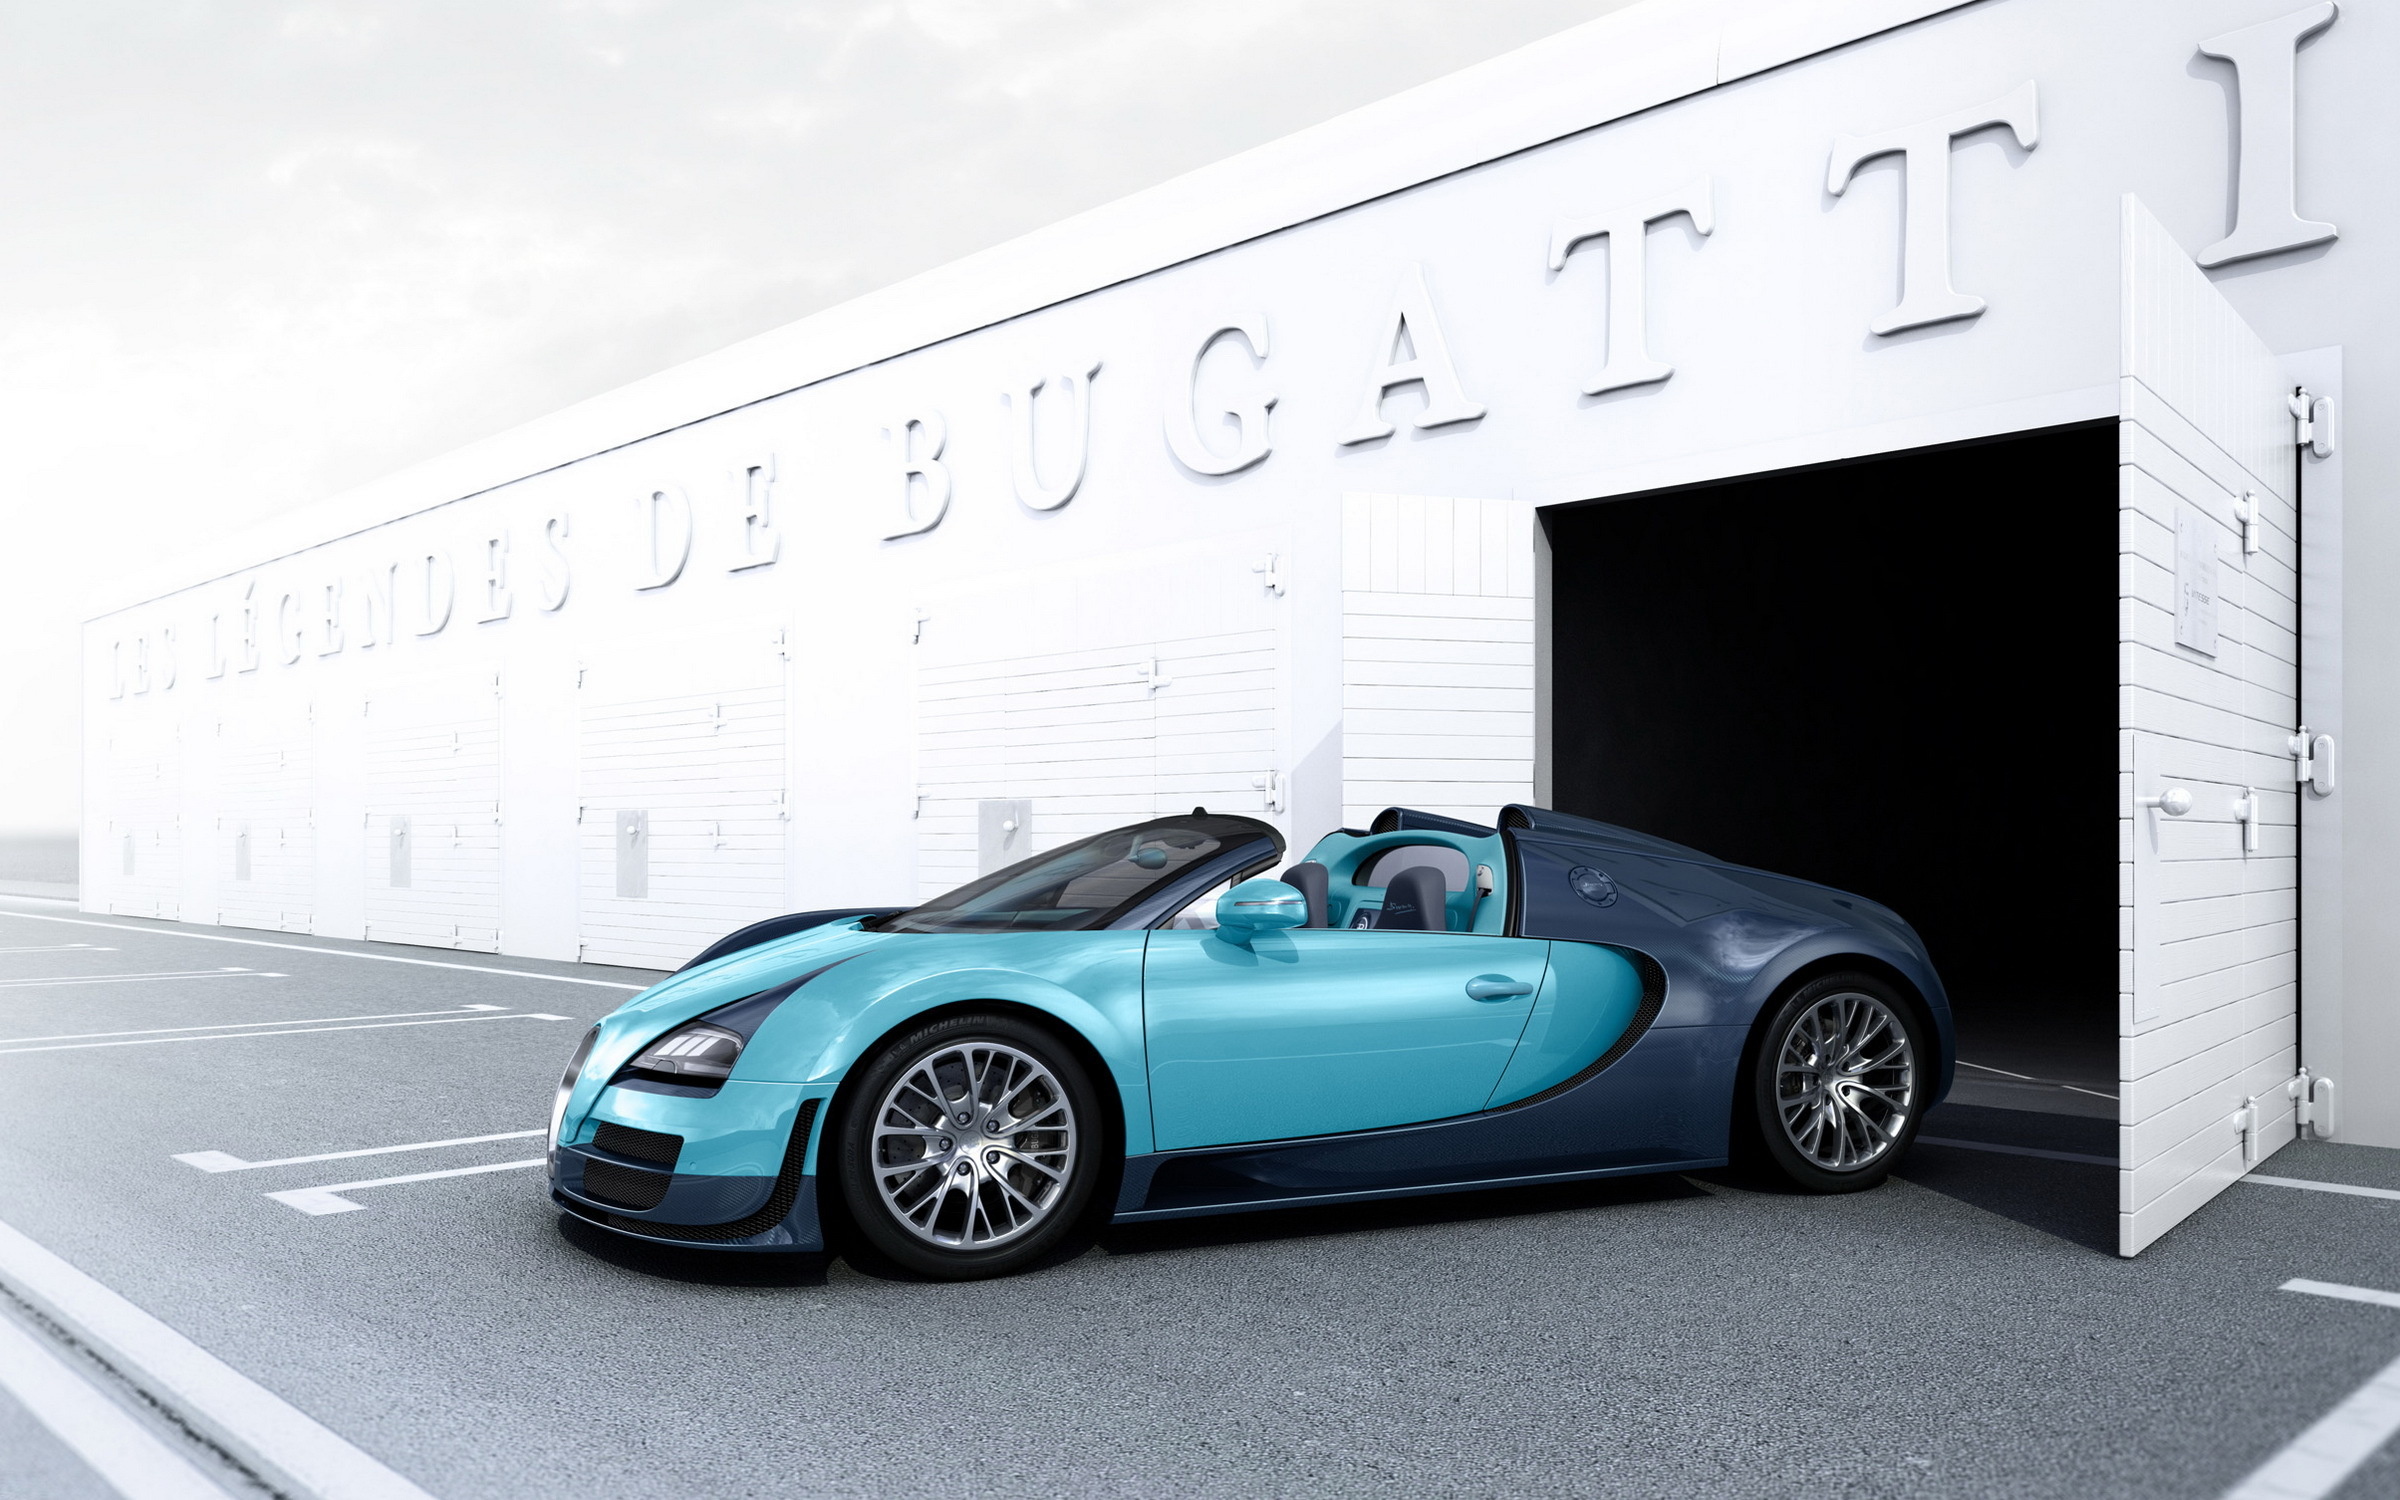 Скачать обои Bugatti Veyron на телефон бесплатно